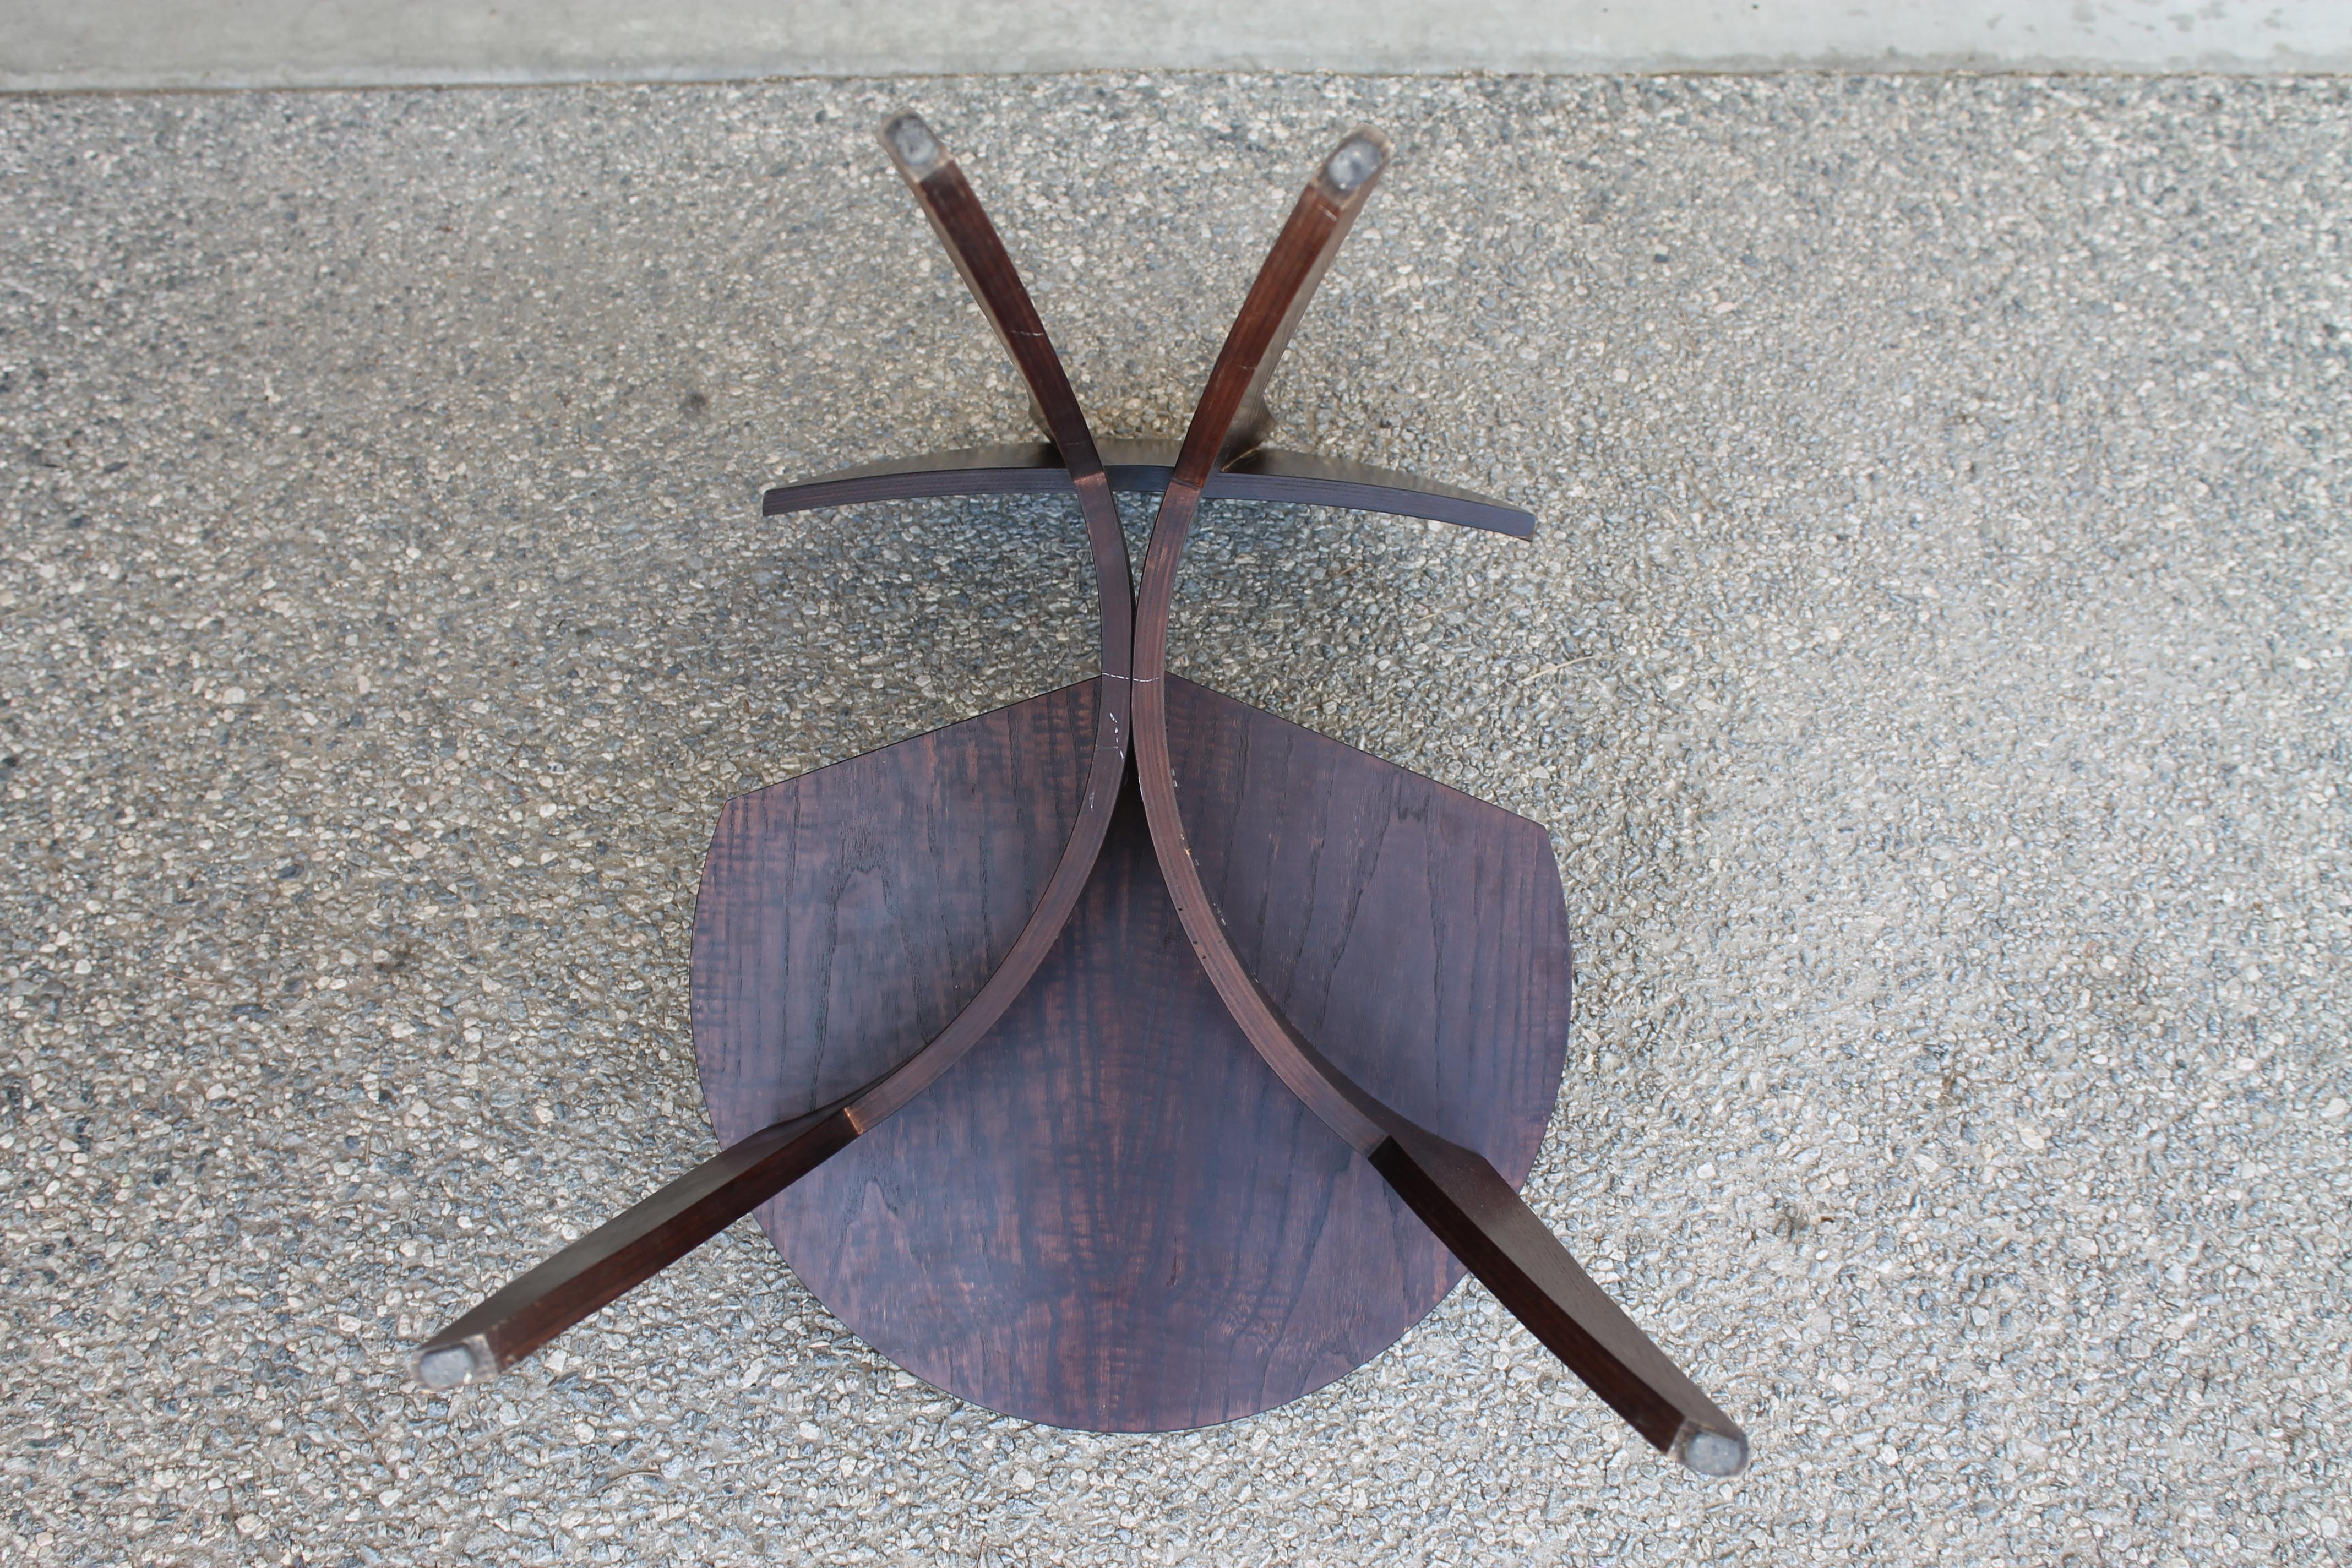 Wood Four Custom Chairs in a Ginkgo or Fan Pattern